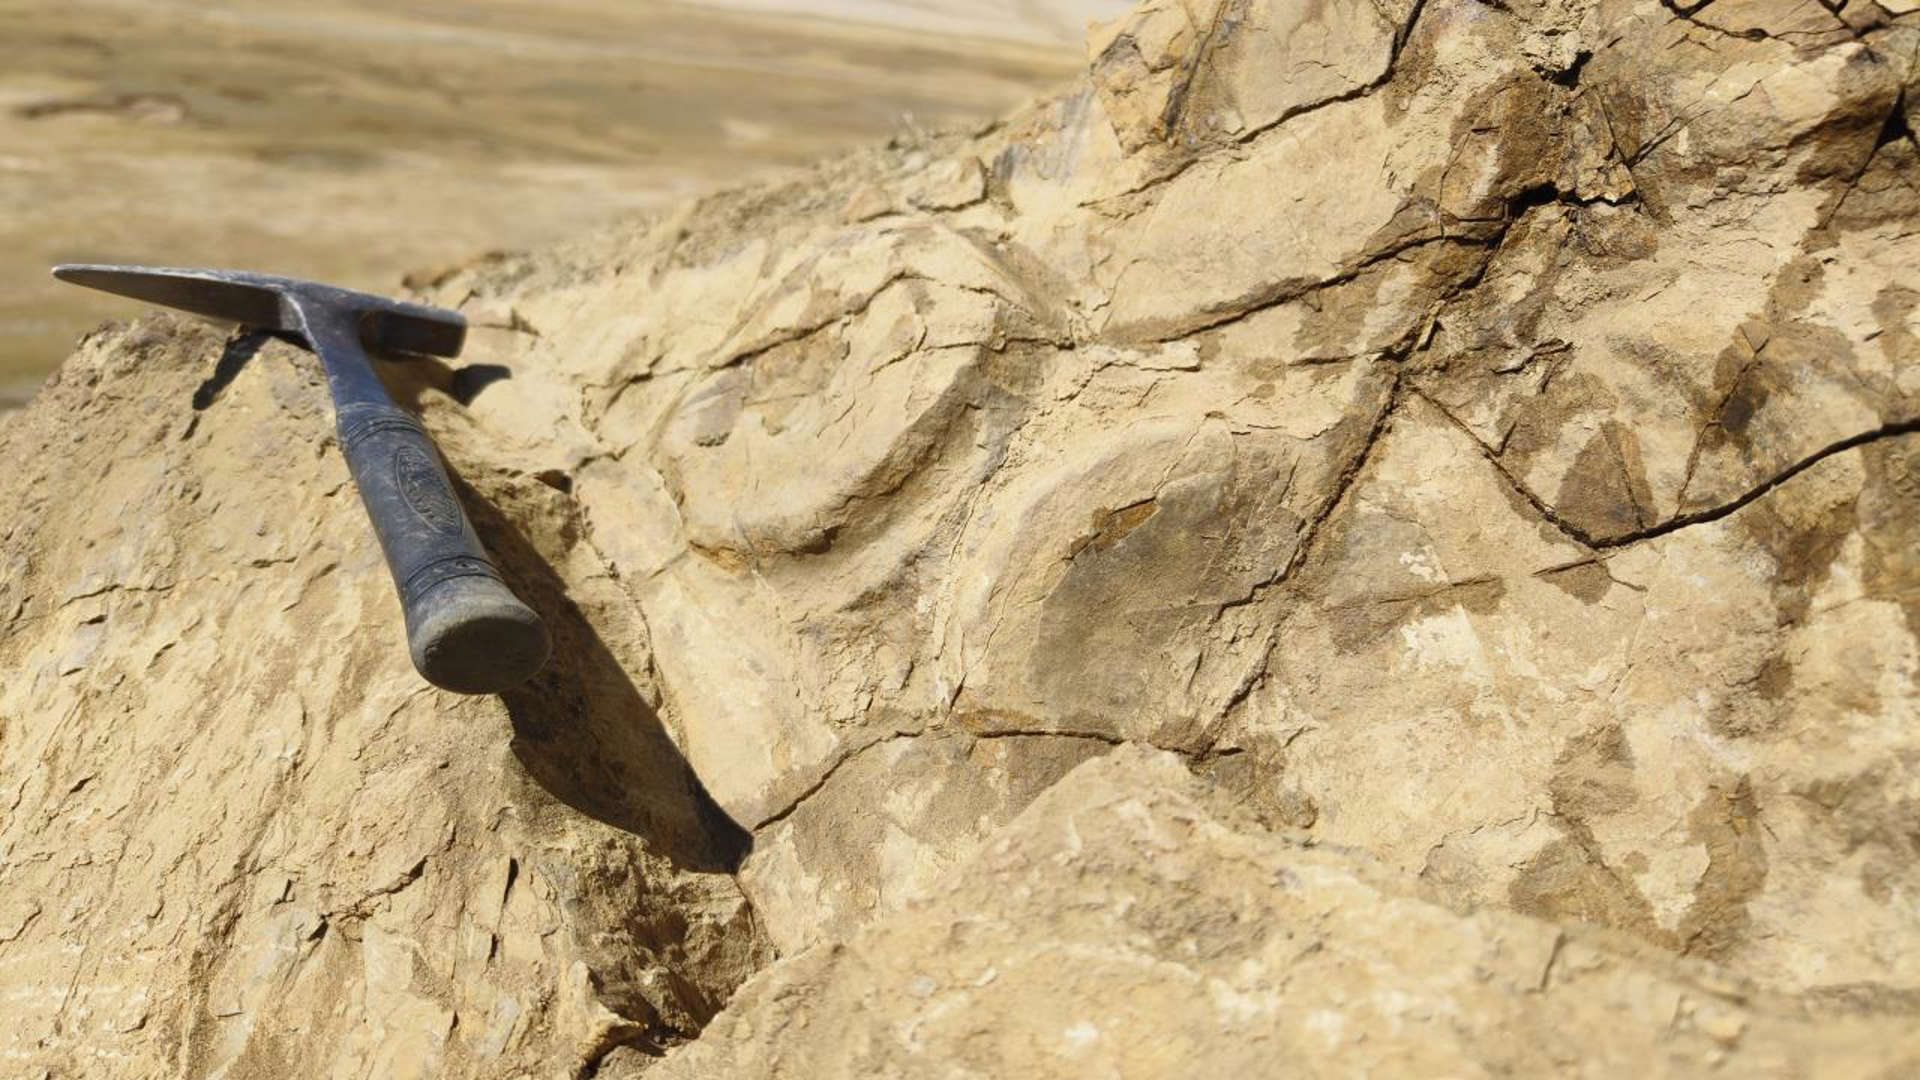 珠穆朗玛峰地区发现新的喜马拉雅鱼龙化石